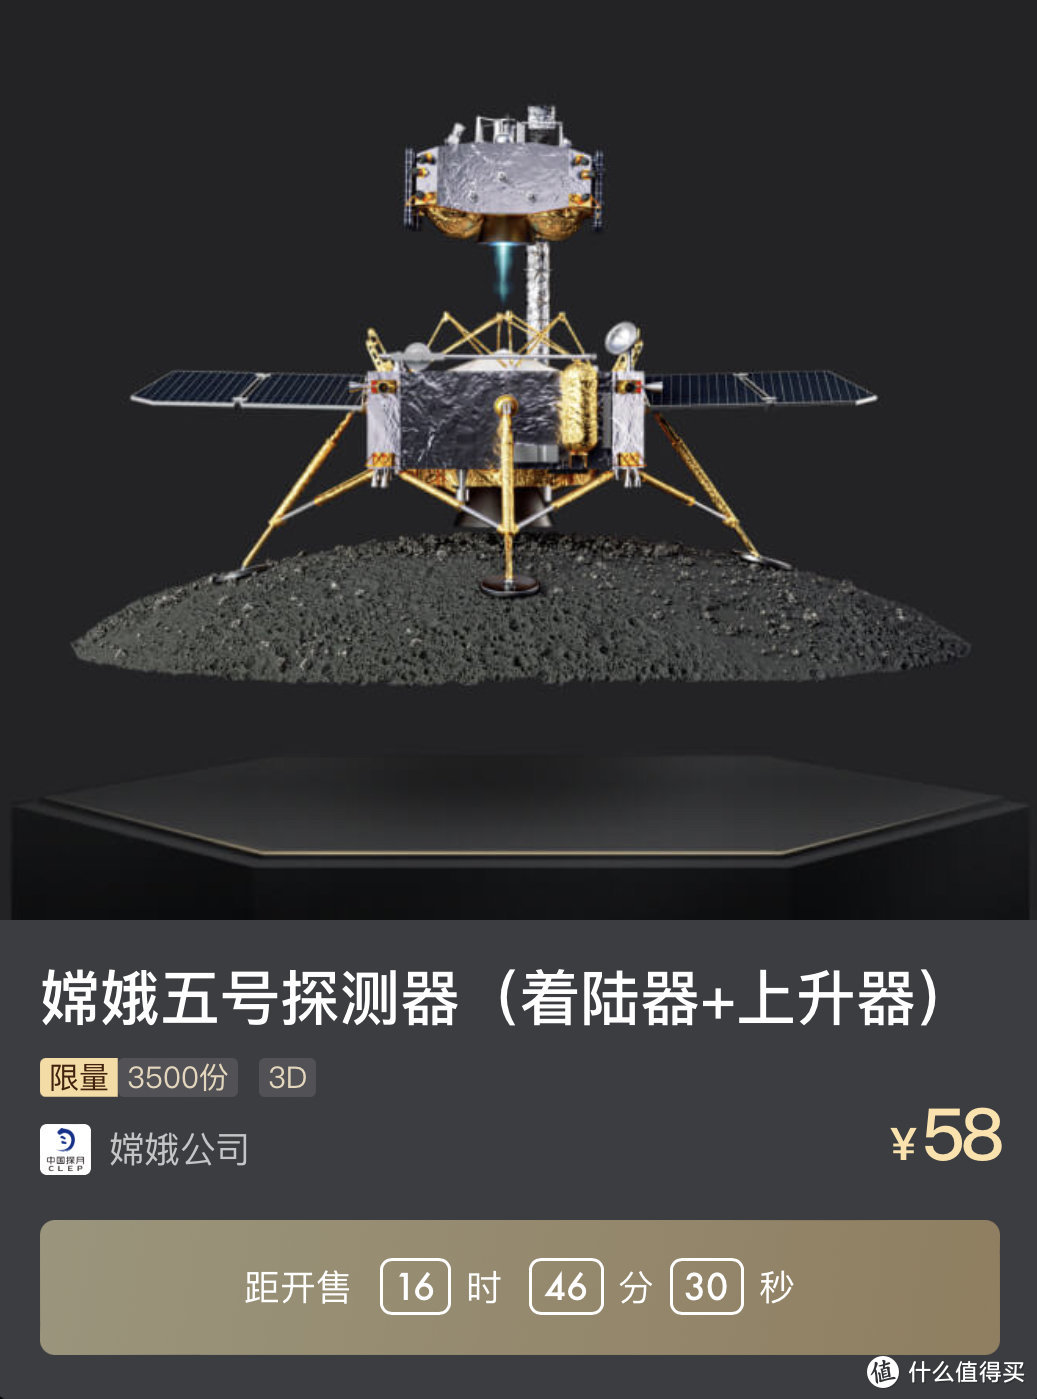 8月16日国内大平台NFT发行预告丨嫦娥五号探测器即将上线